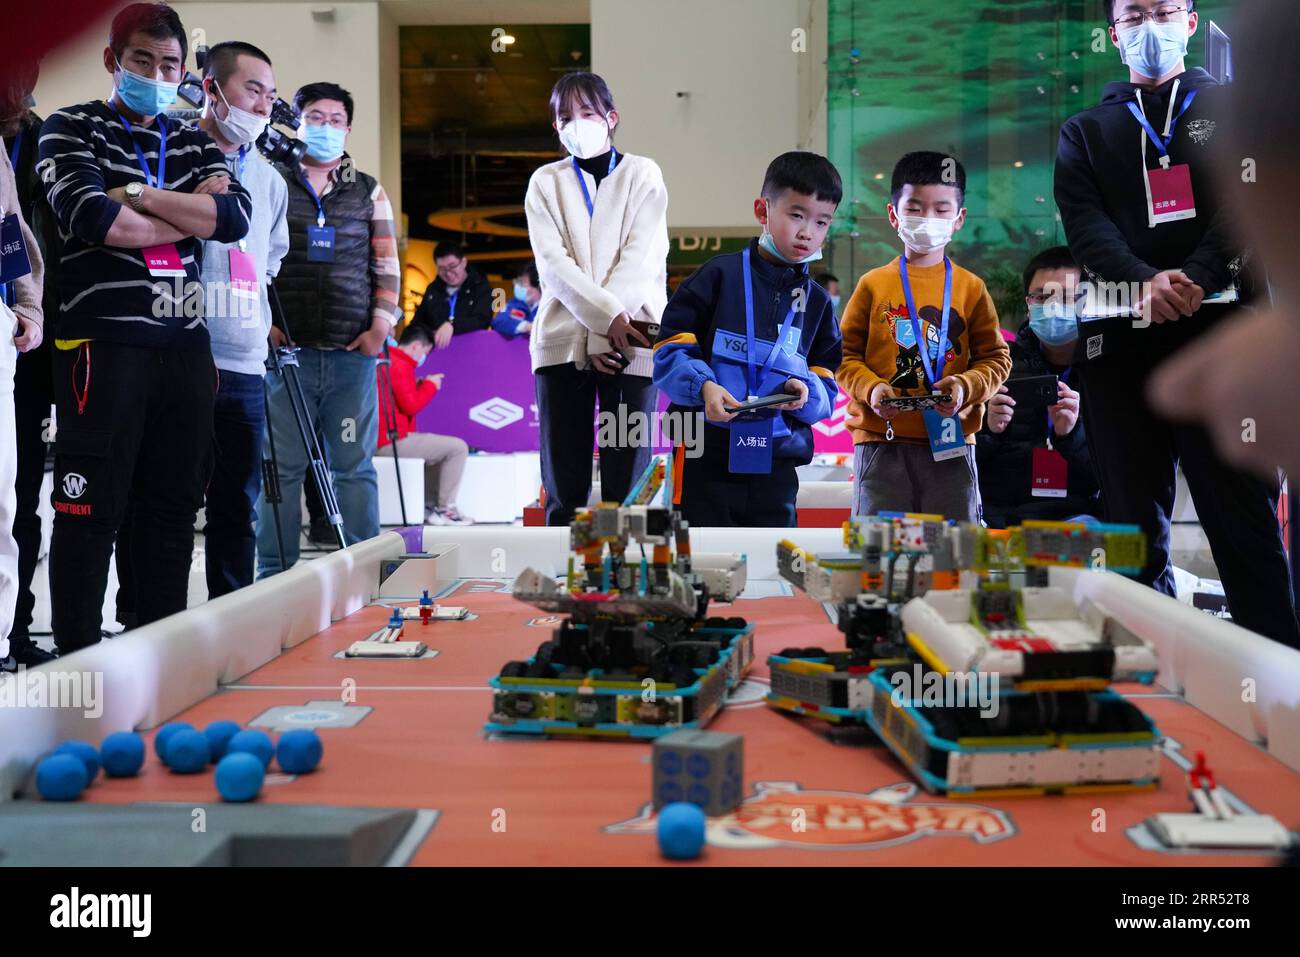 201220 -- PECHINO, 20 dicembre 2020 -- gli studenti prendono parte al concorso Robo Genius al China Science and Technology Museum di Pechino, capitale della Cina, 20 dicembre 2020. Gli studenti di oltre cento scuole primarie e scuole medie nazionali competono nelle finali di Robo Genius a tema "Exploring Mars on Sunday". CHINA-BEIJING-STUDENT-ROBO GENIUS-COMPETITION CN CHENXZHONGHAO PUBLICATIONXNOTXINXCHN Foto Stock